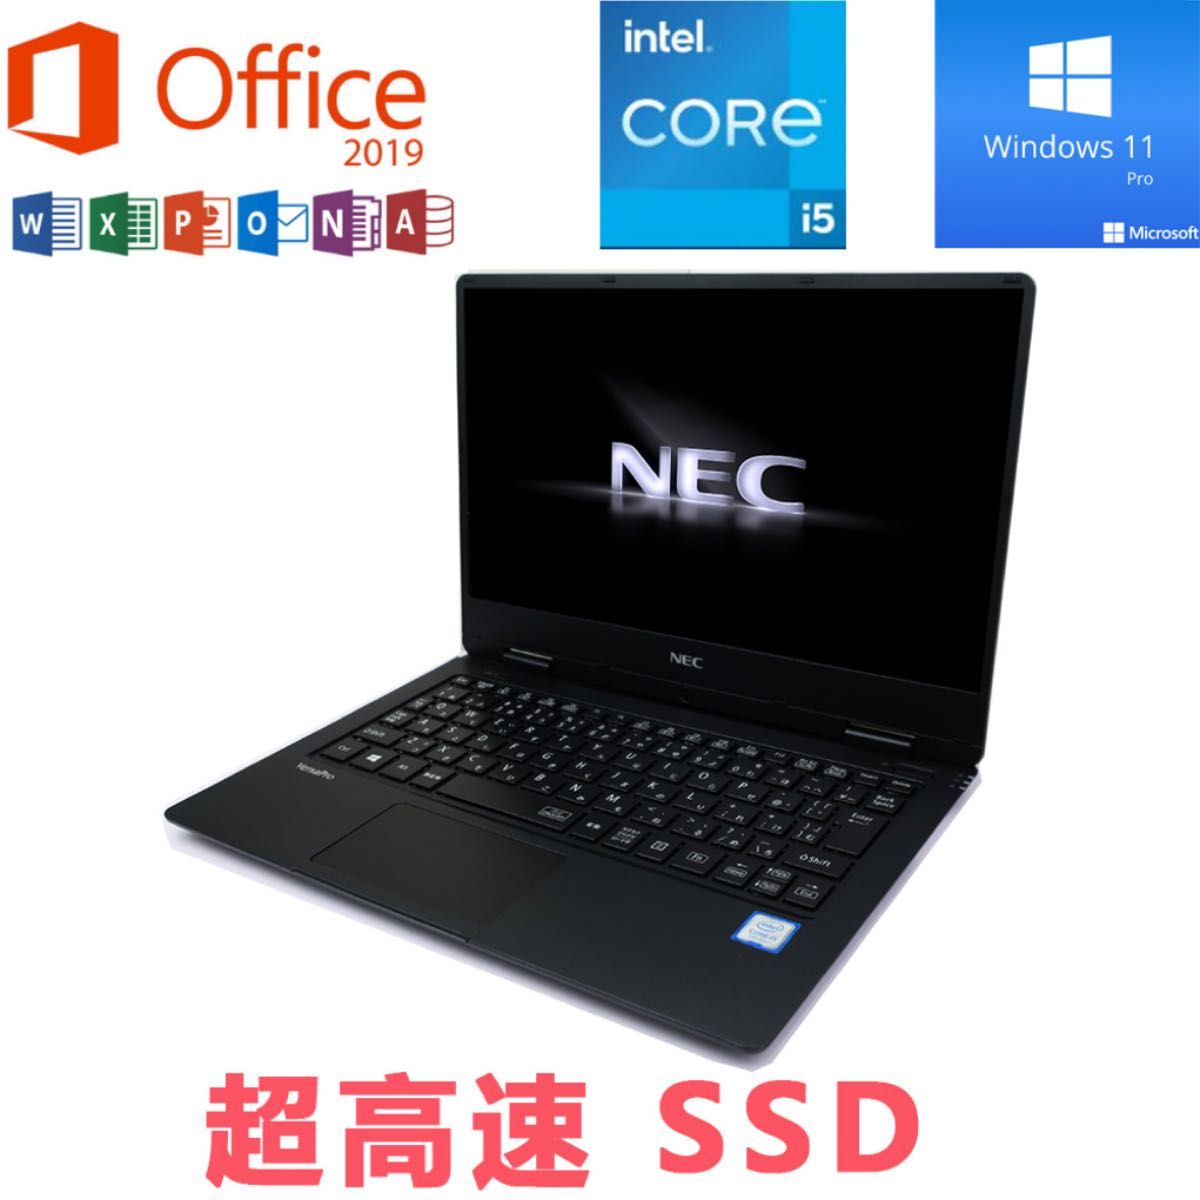 中古超美品 超速SSD ノートパソコン NEC PC-VK22TGSFN 第5世代 i5 4GB